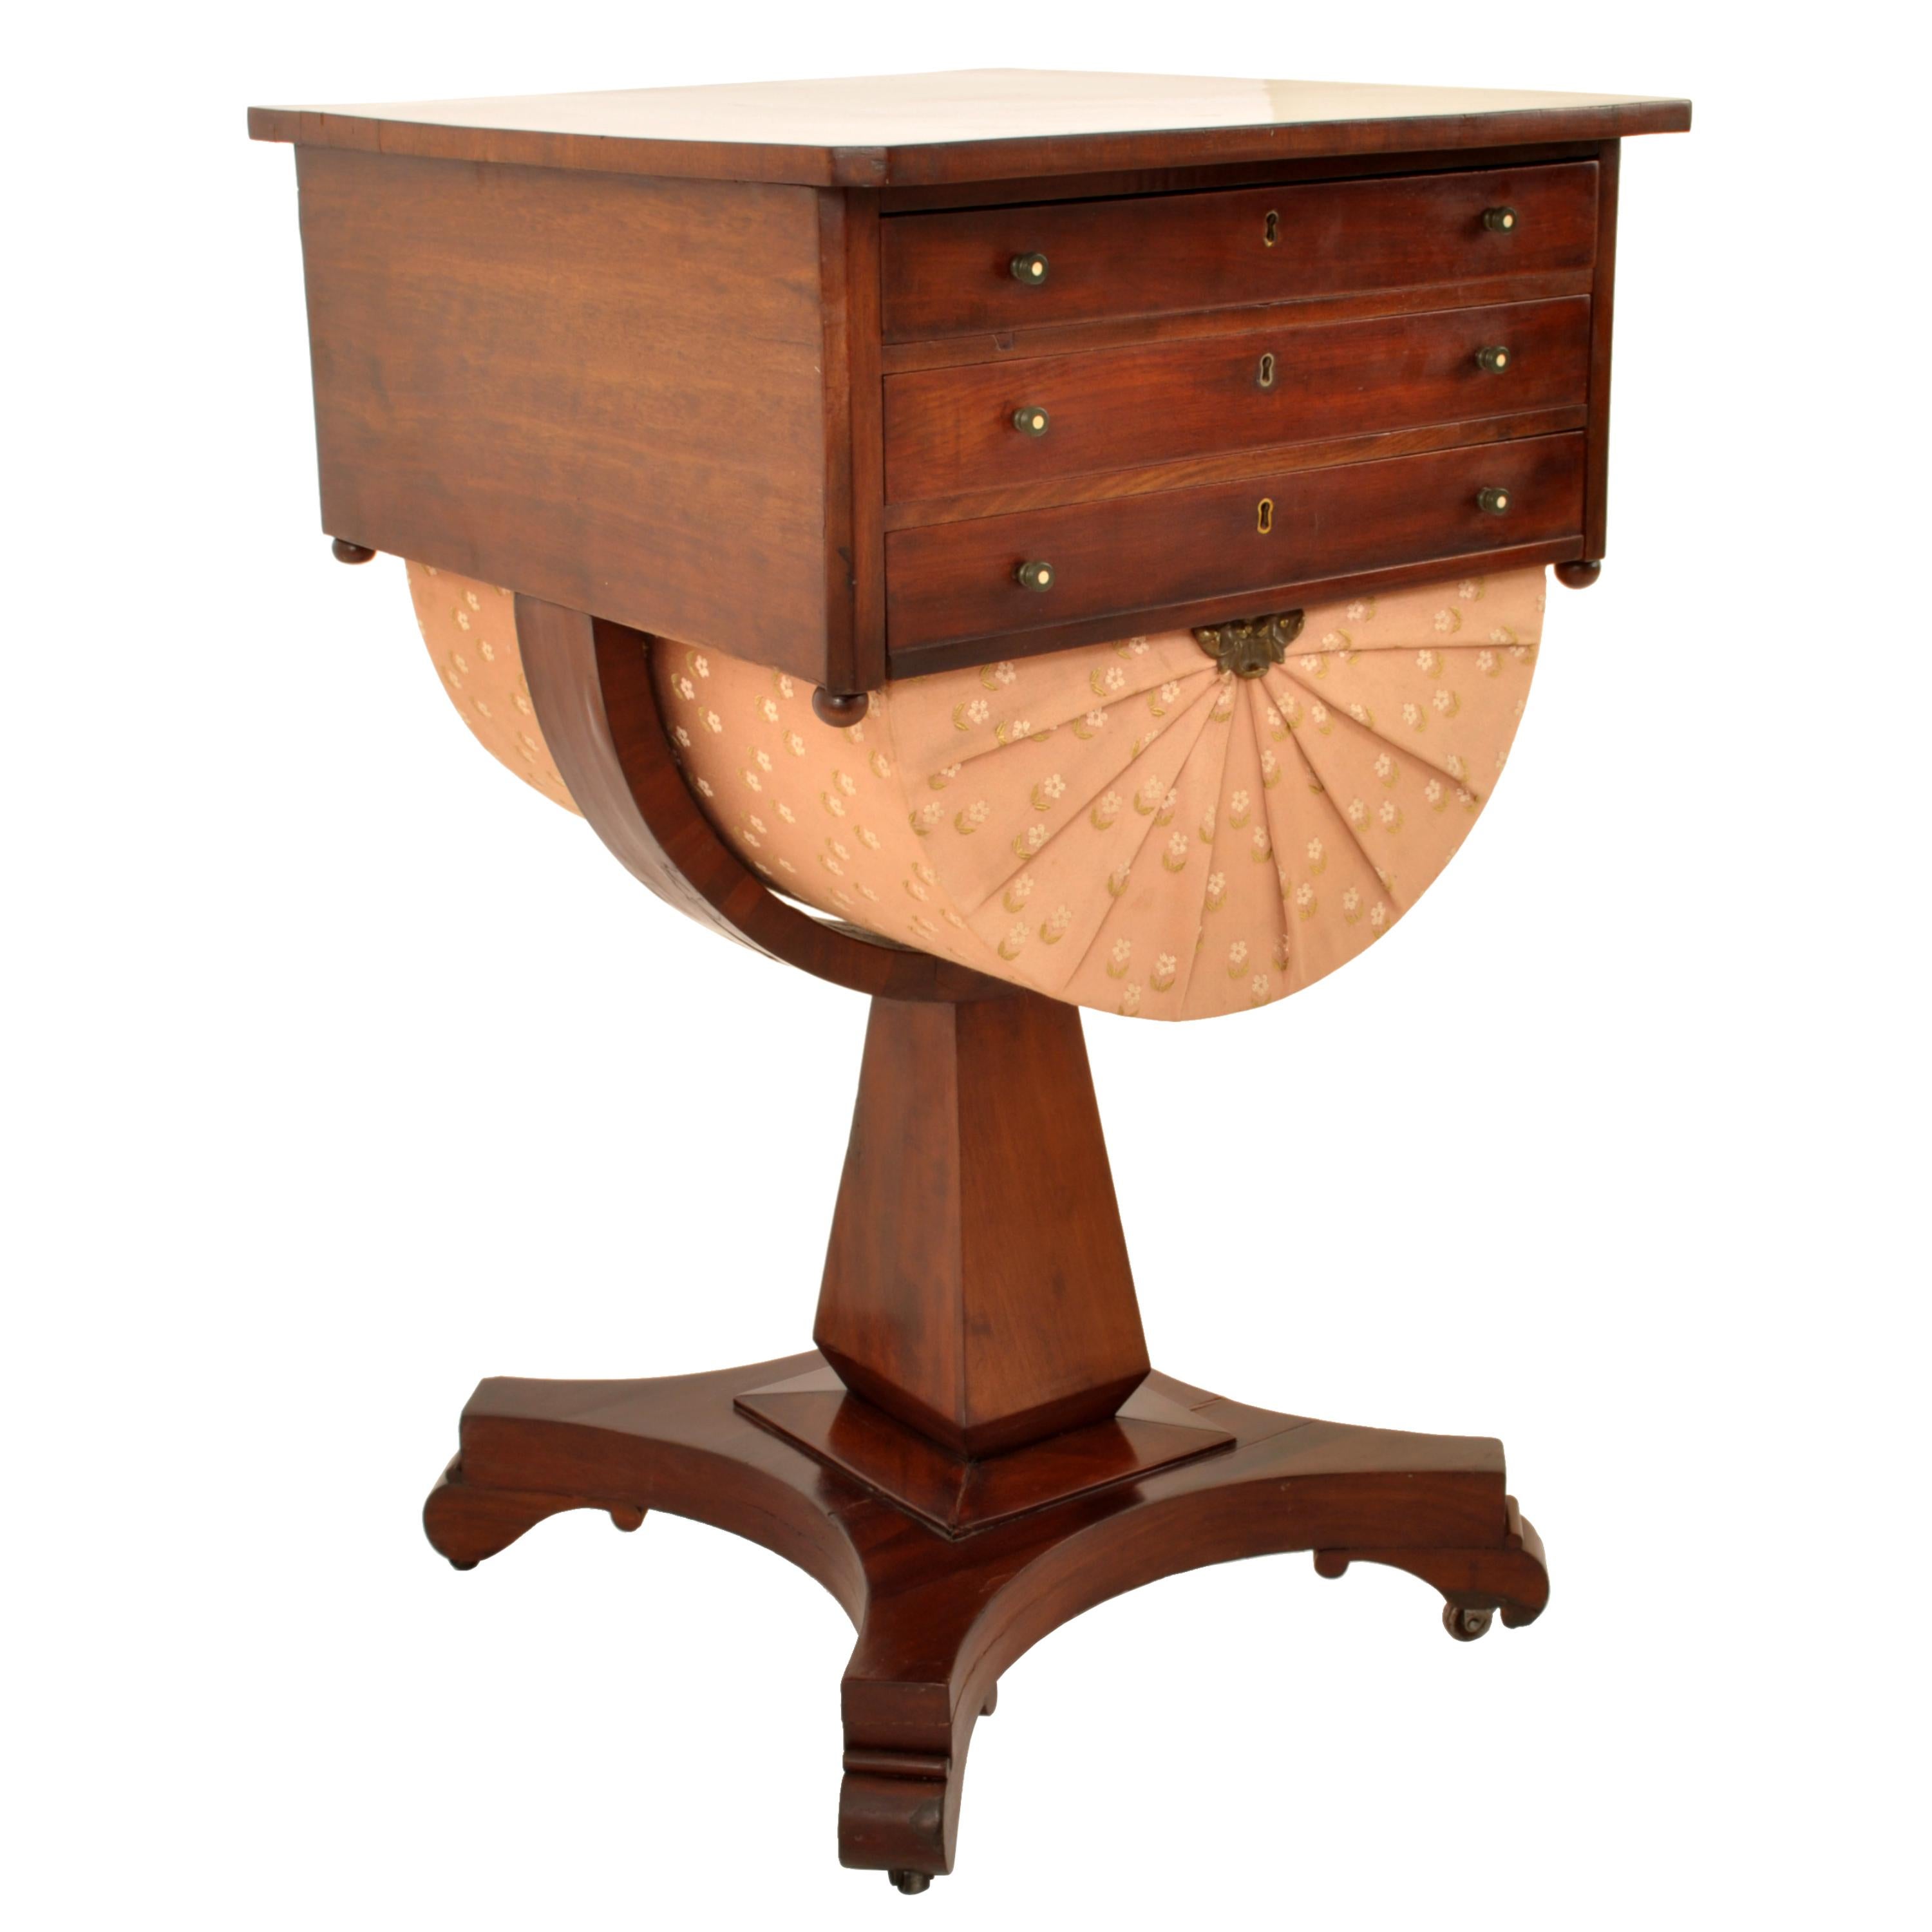 Ein guter antiker Arbeitstisch aus geflammtem Mahagoni der amerikanischen Empire-Zeit, New York, um 1840.
Der Tisch aus geflammtem Mahagoniholz hat drei Schubladen, die Platte ist mit einem Innenleben versehen, die dritte Schublade mit einem 